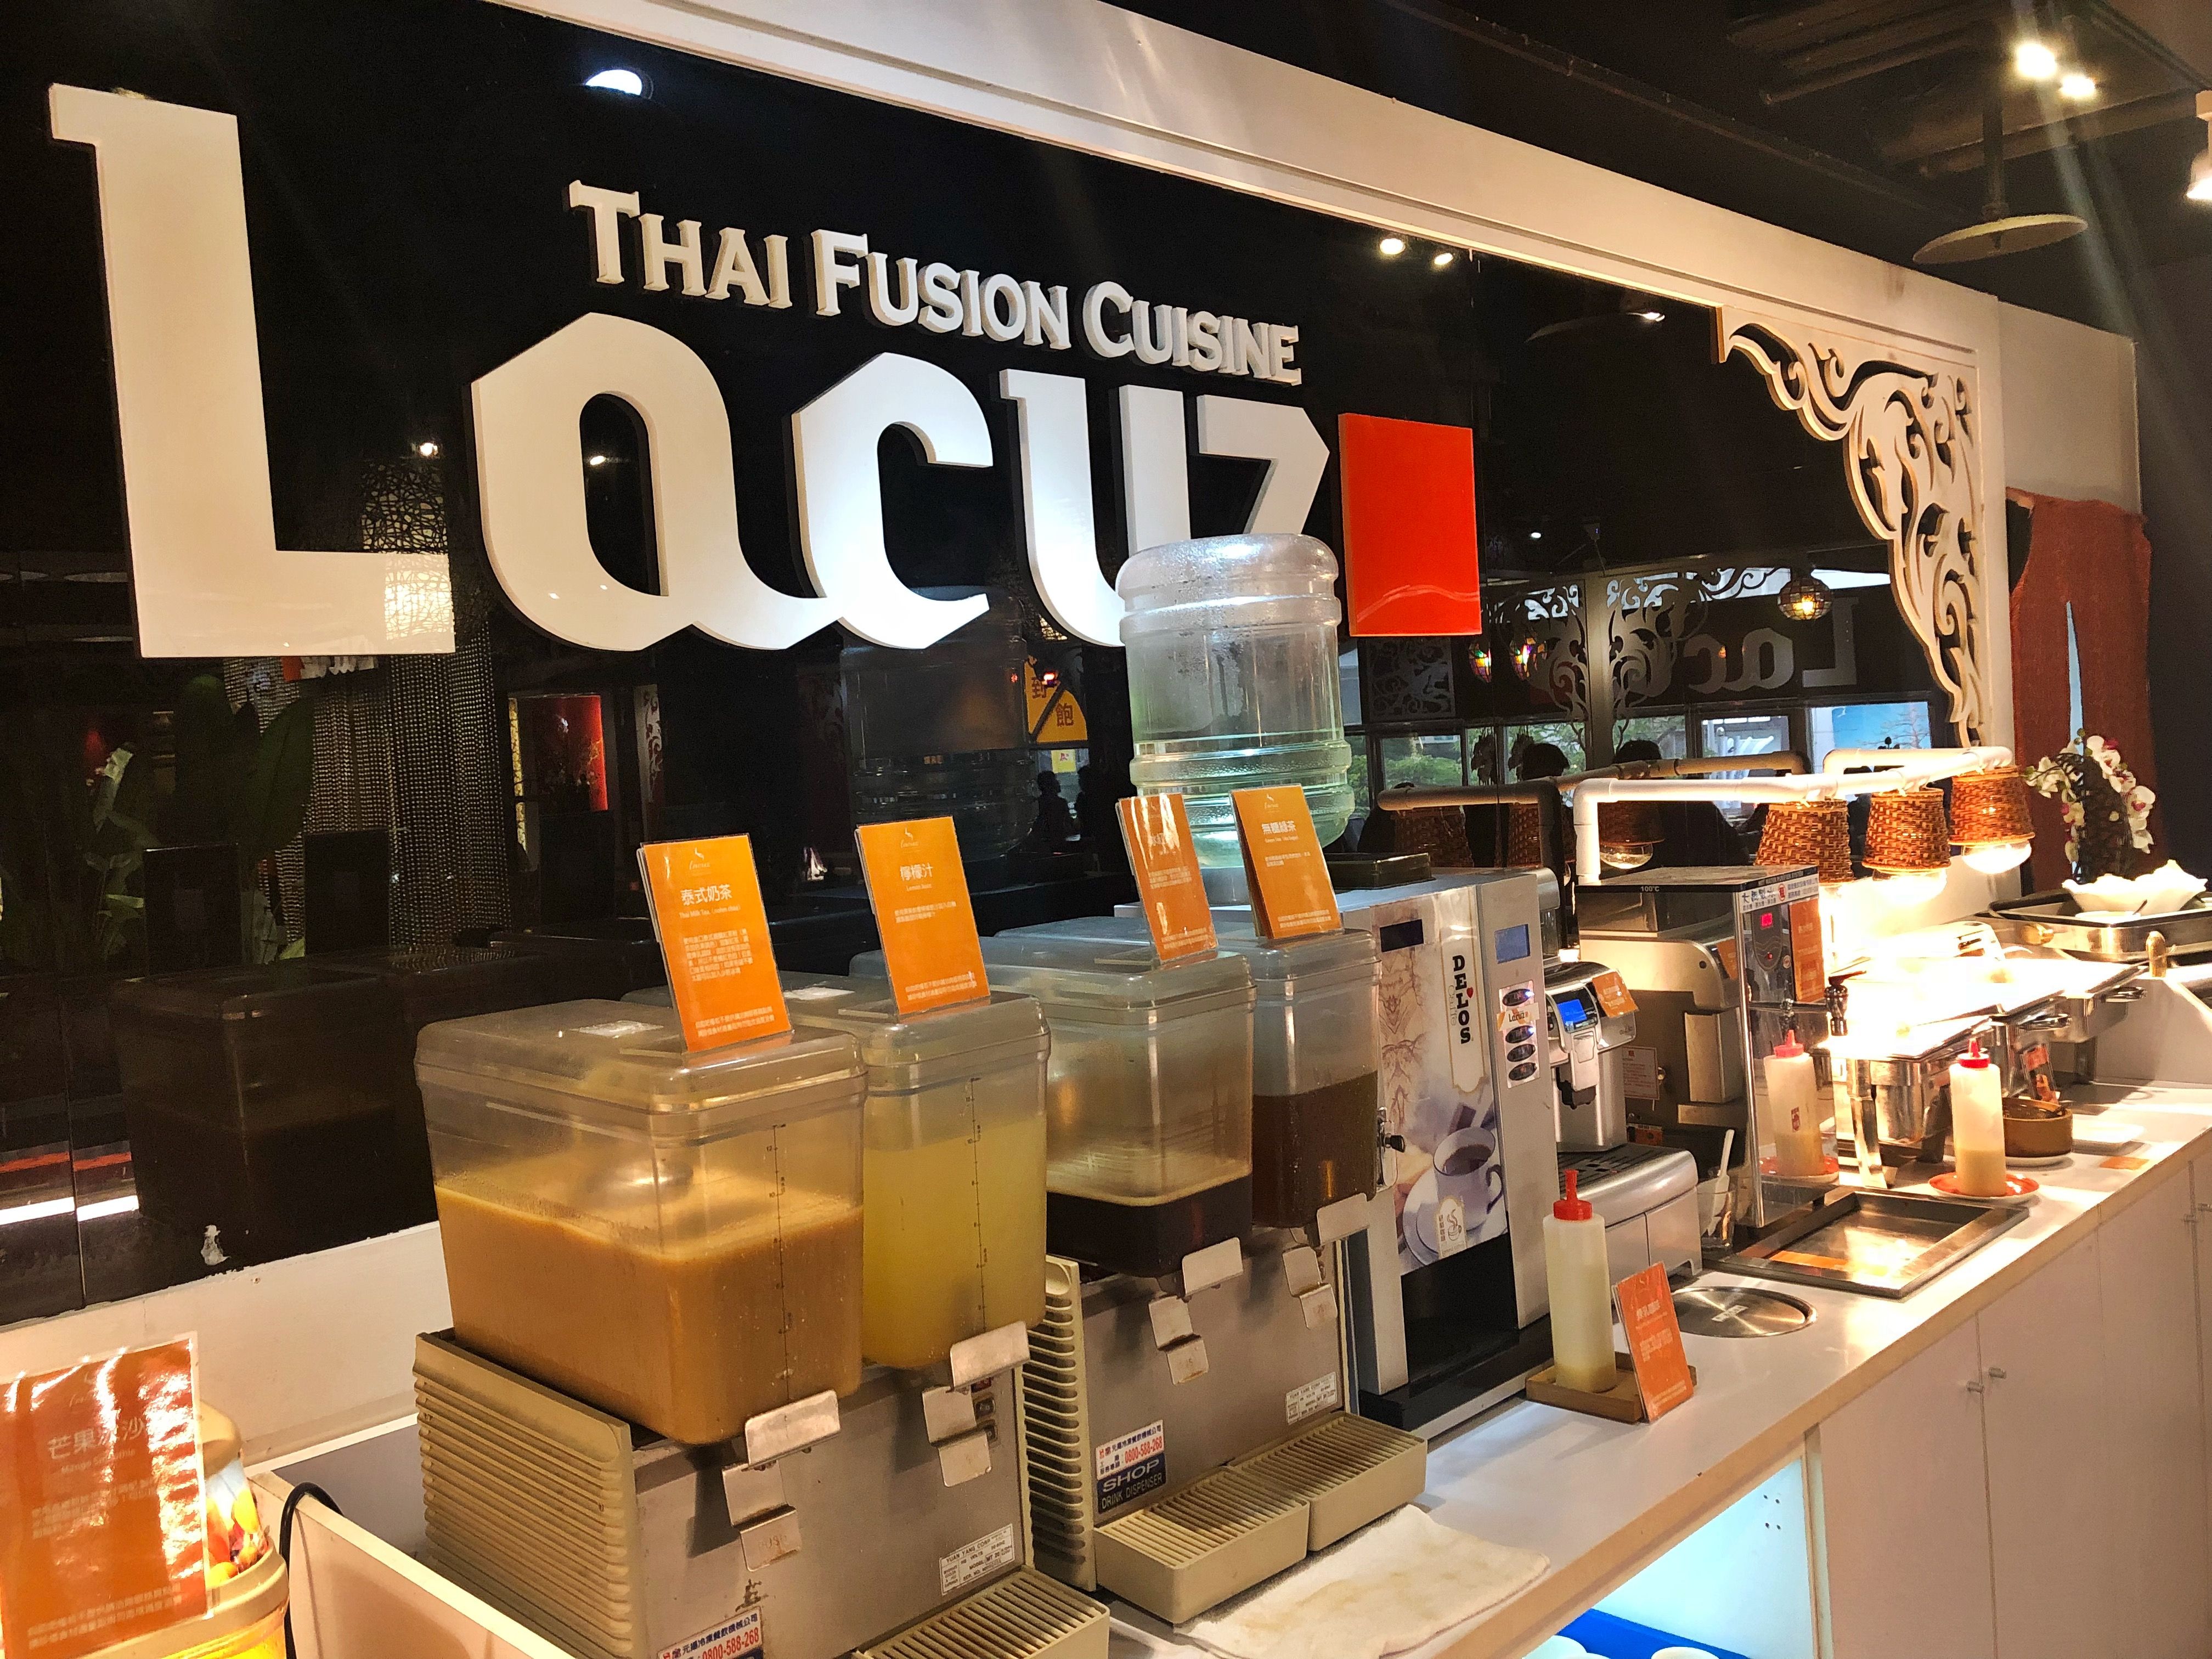 Lacuz Thai Fusion Cuisine, Lacuz 泰食-樂 泰式料理餐廳 11.JPG